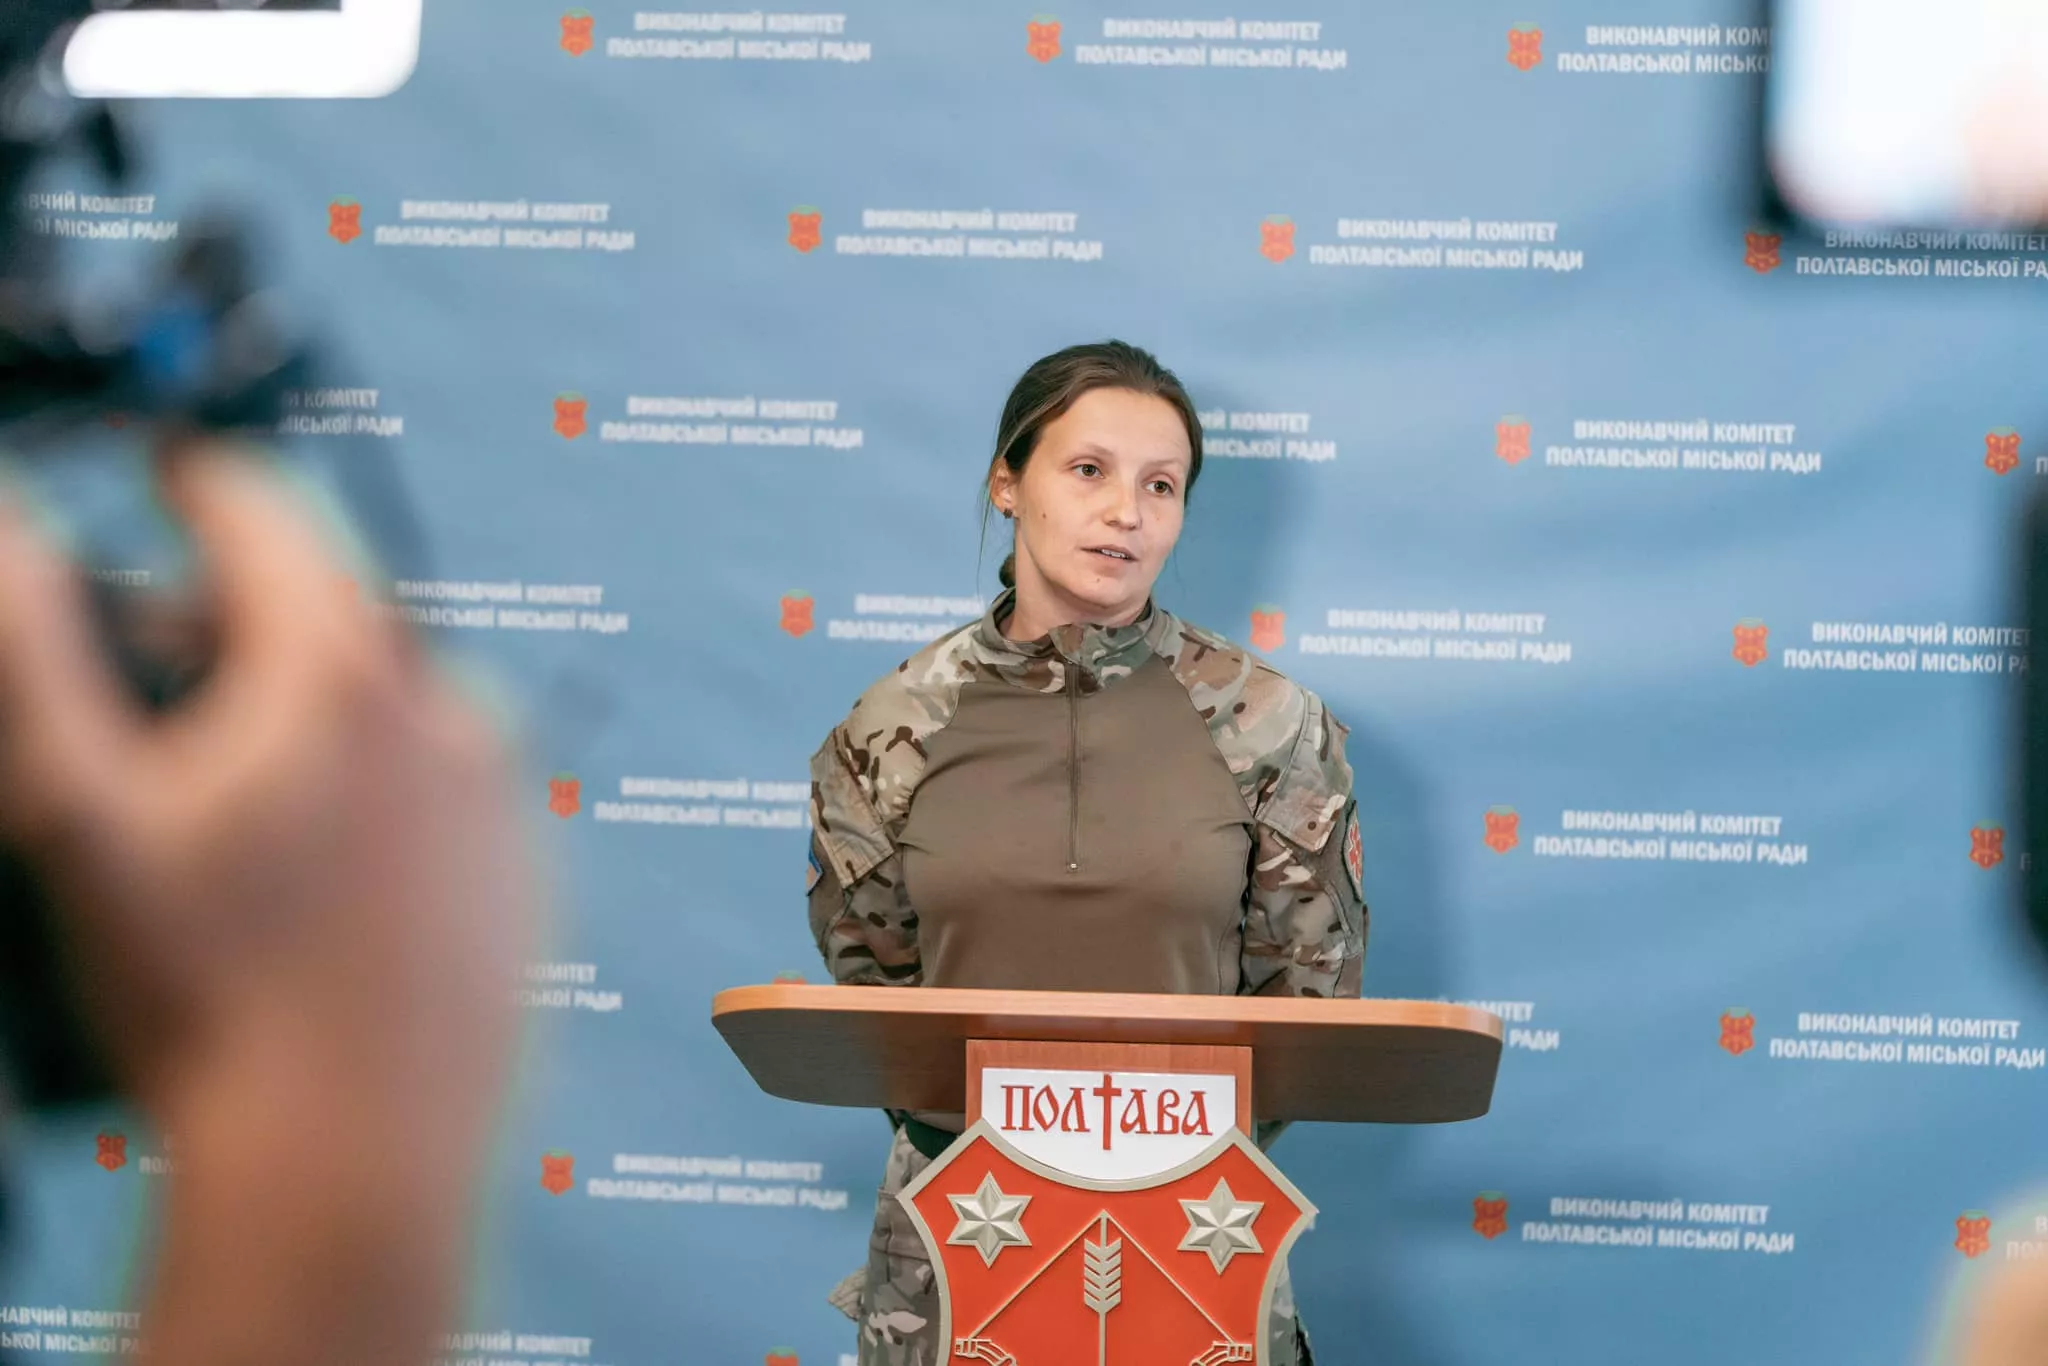 From now on, Kateryna Yamshchykova is acting mayor of Poltava